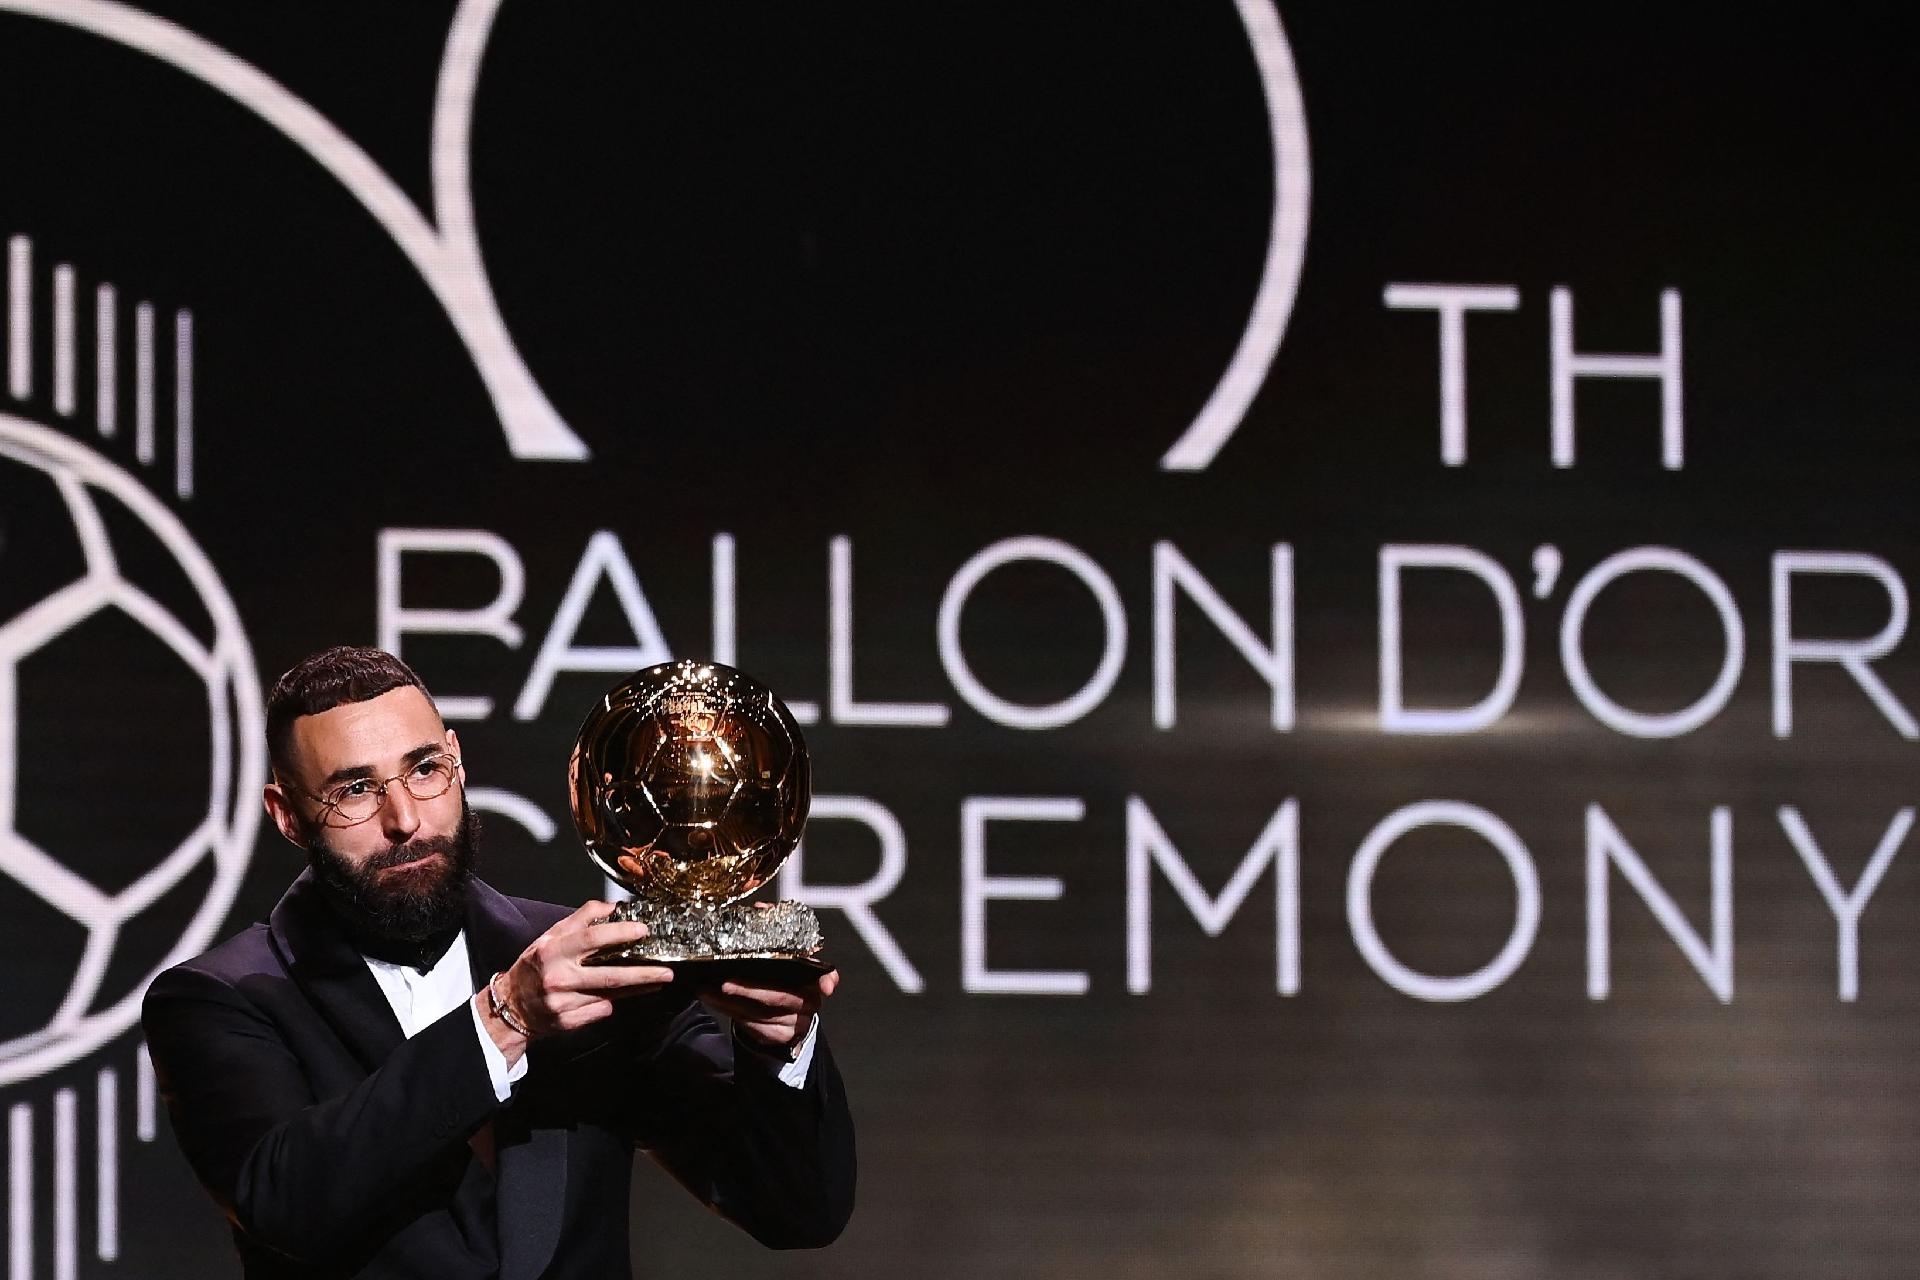 Bola de Ouro: Benzema, do Real Madrid, recebe prêmio de melhor do